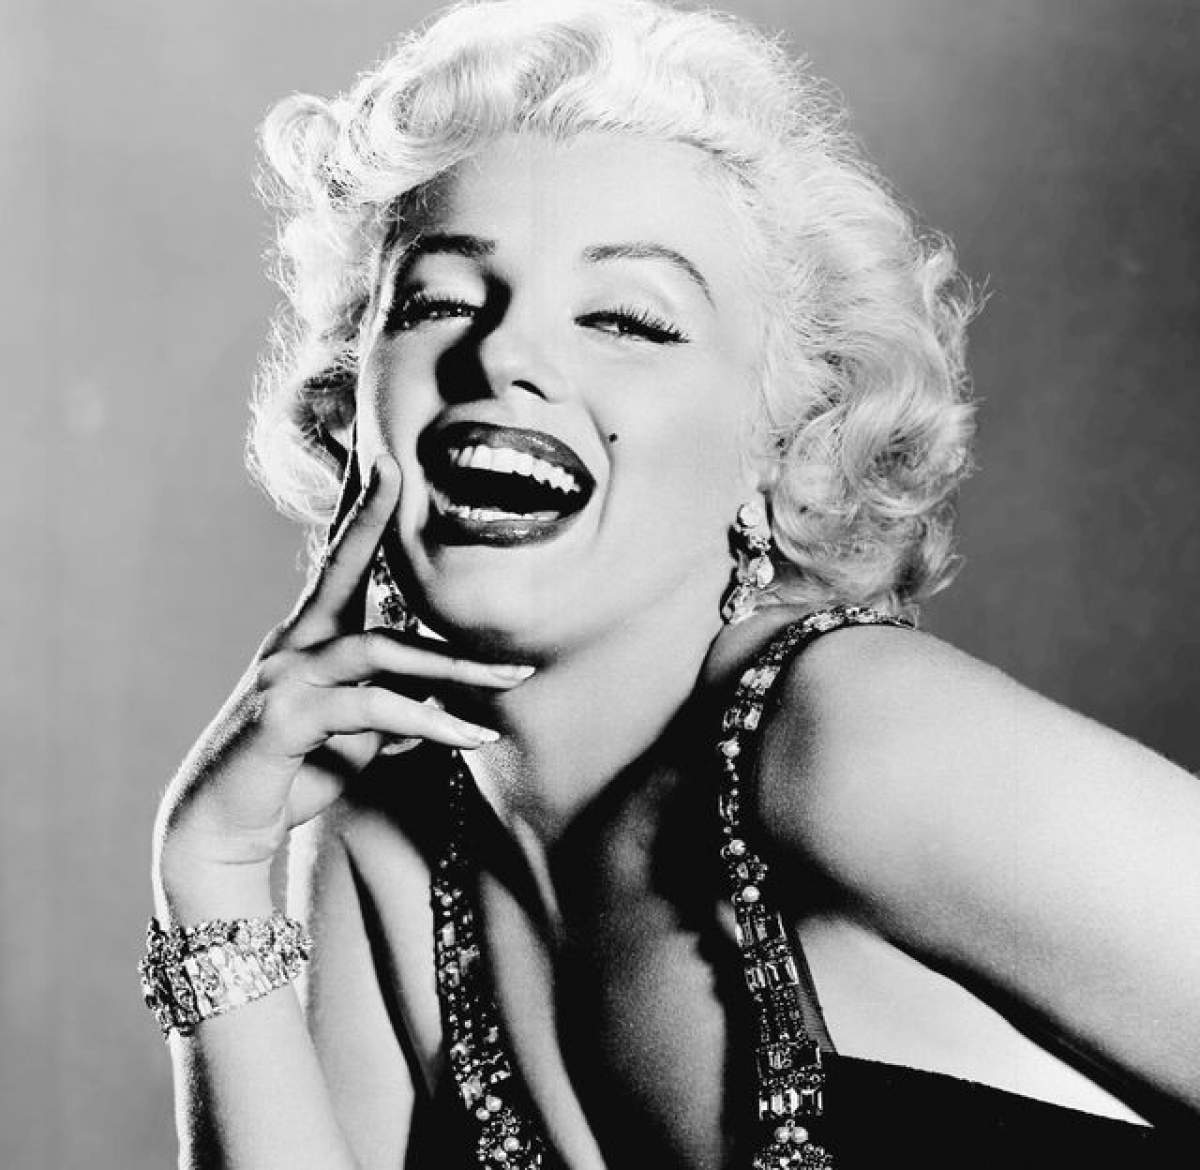 Învaţă cum să îţi faci aluniţă a la Marilyn Monroe! O să atragi toate privirile